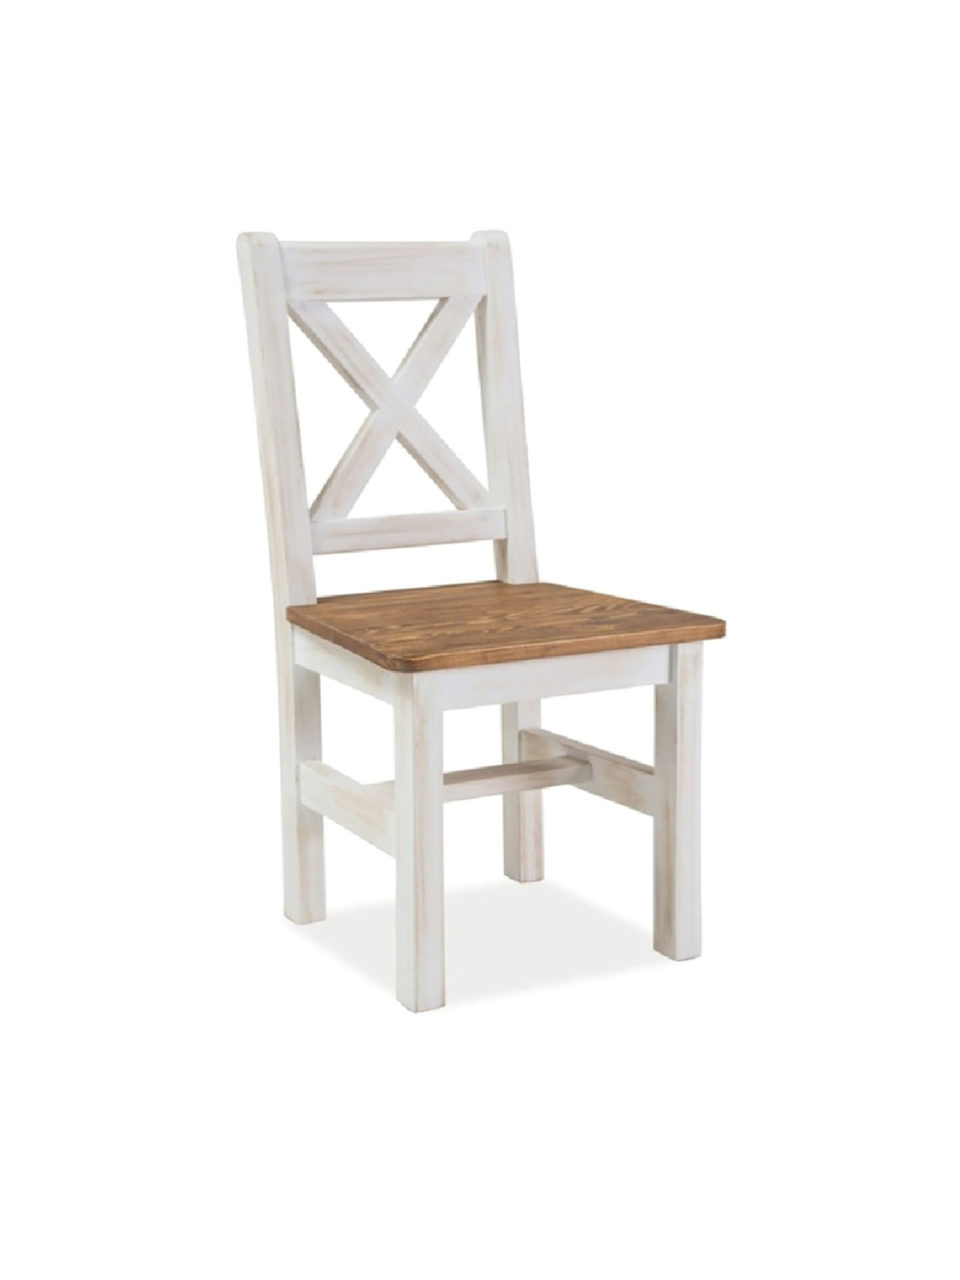 стулья для кухни деревянные белые со спинкой